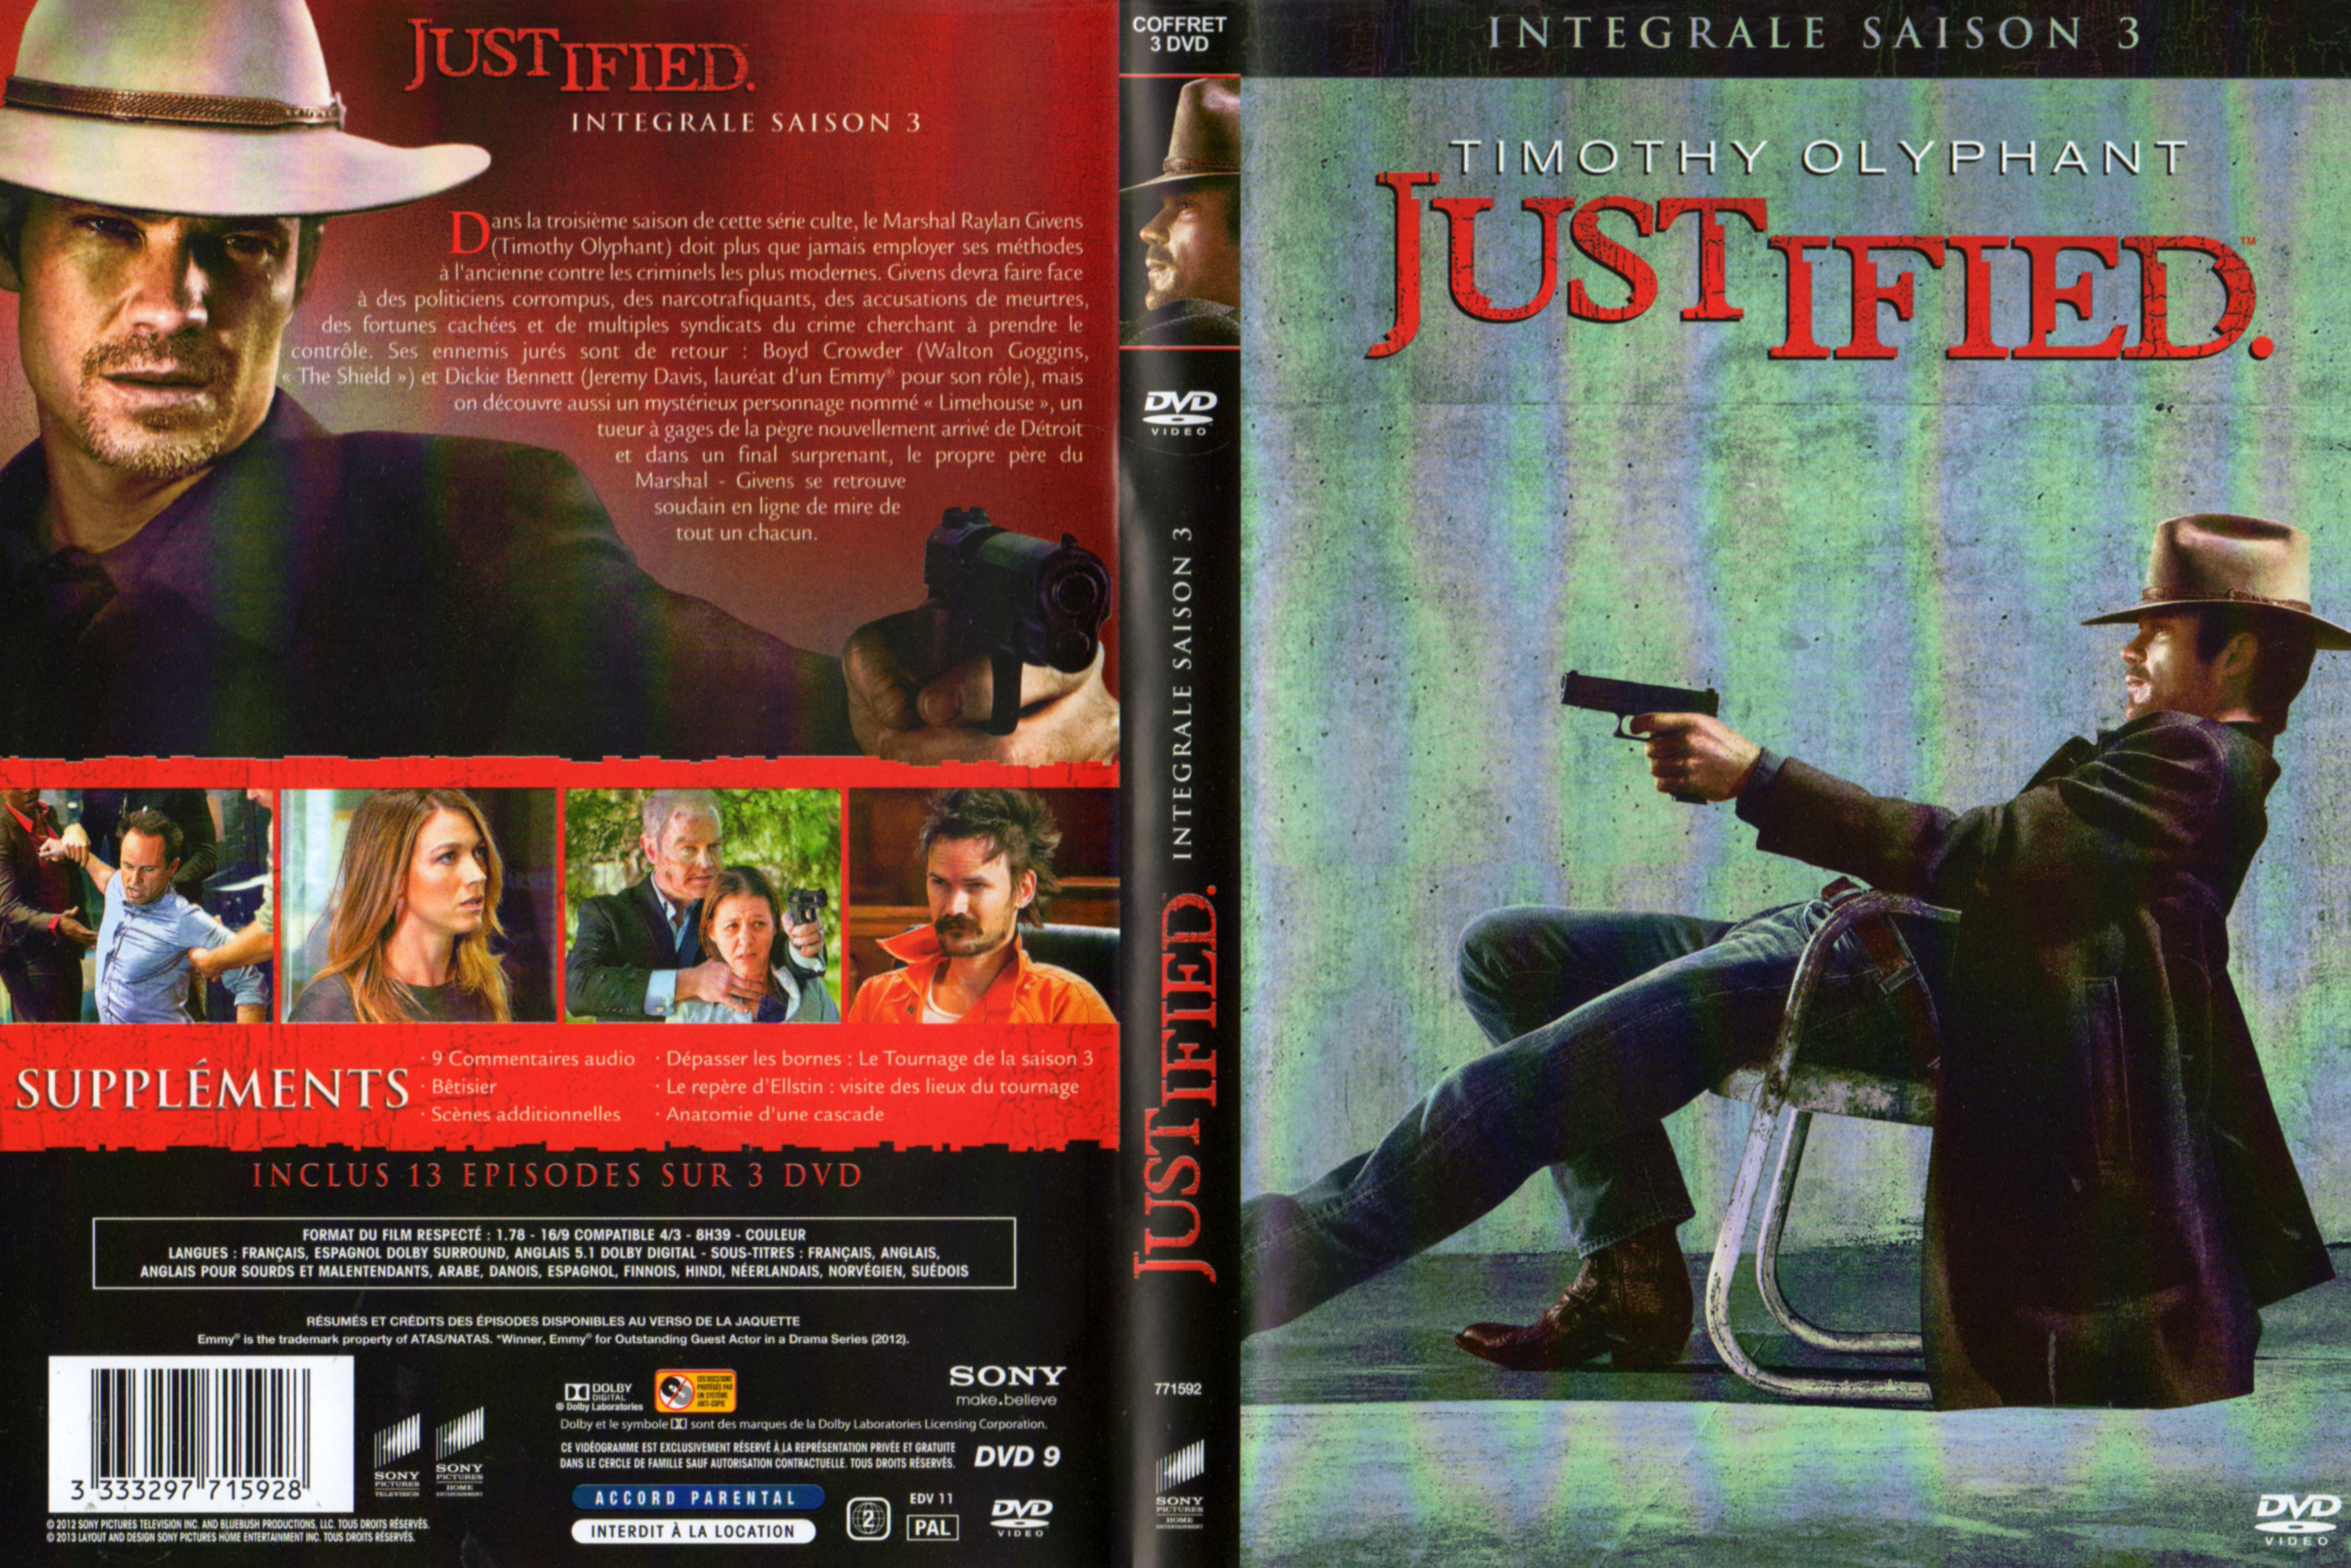 Jaquette DVD Justified Saison 3 COFFRET